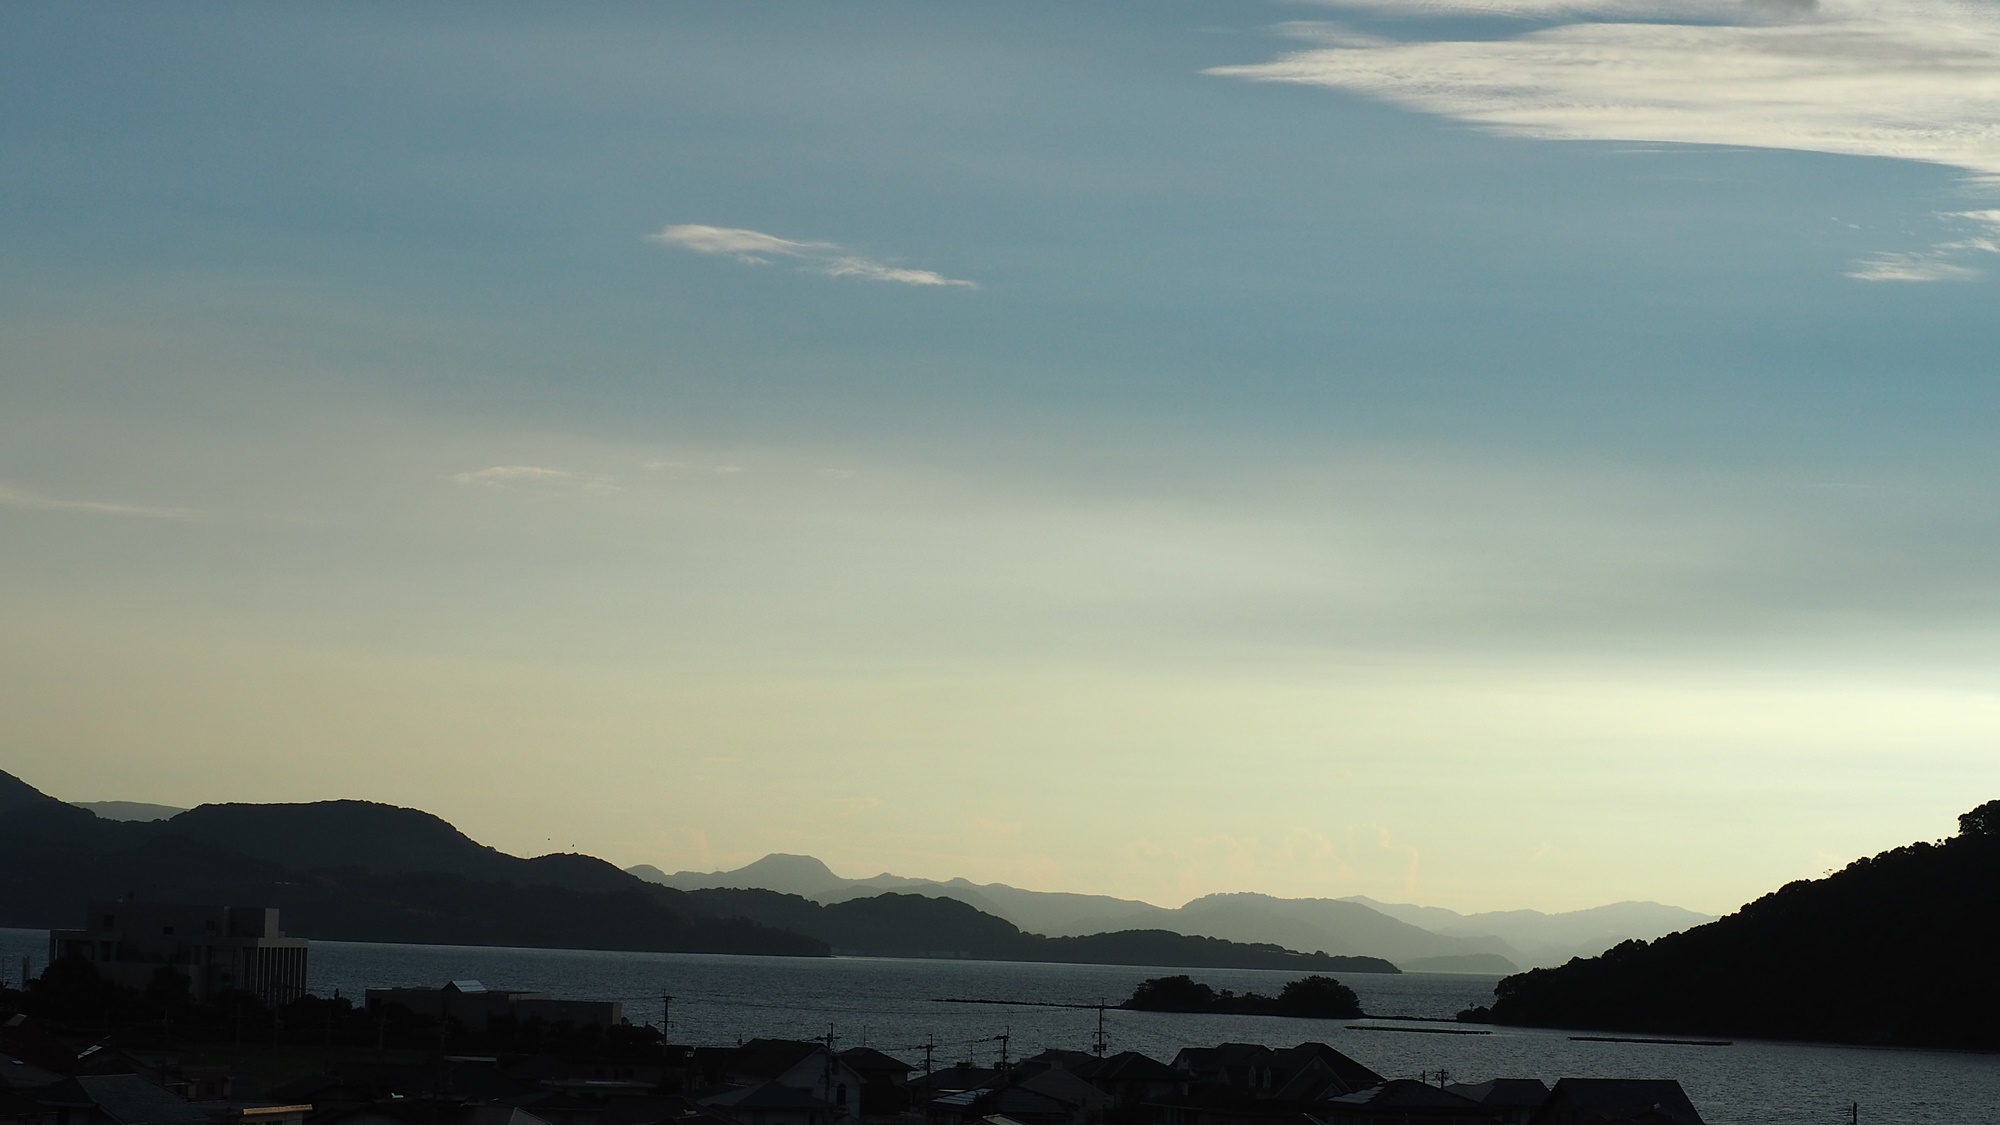  大村湾と、そこに浮かぶ臼島。その奥には山々の雄大さ。長崎の美しさがそこにあります。